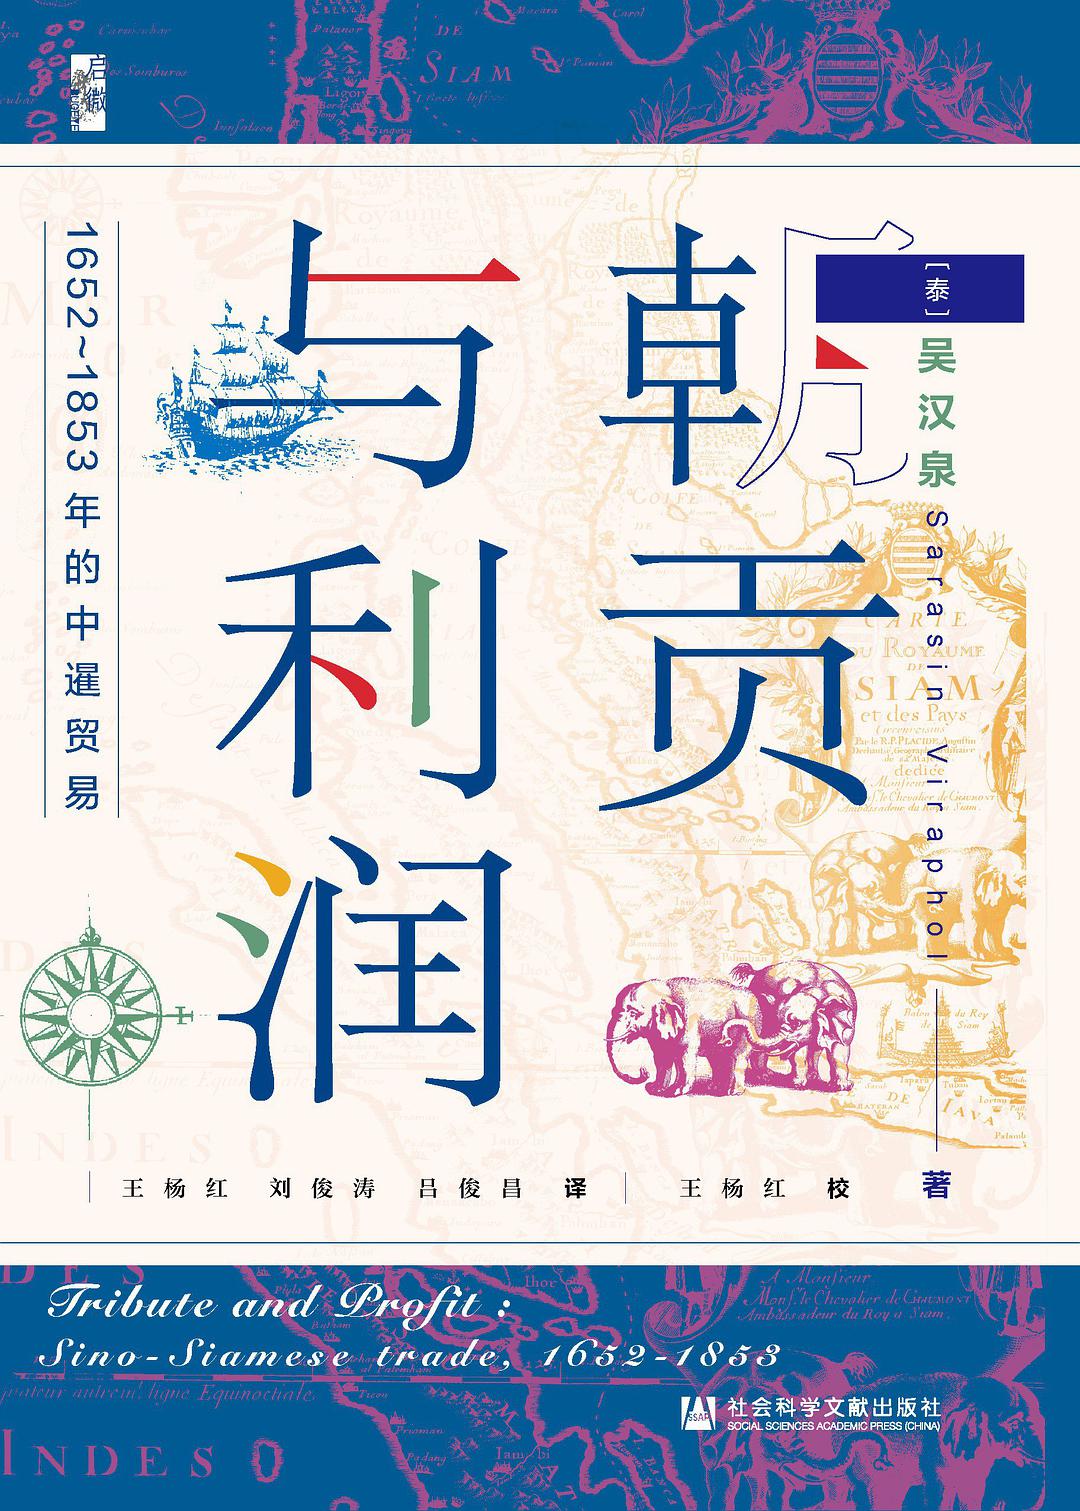 朝贡与利润 1652-1853年的中暹贸易 Sino-Siamese trade, 1652-1853